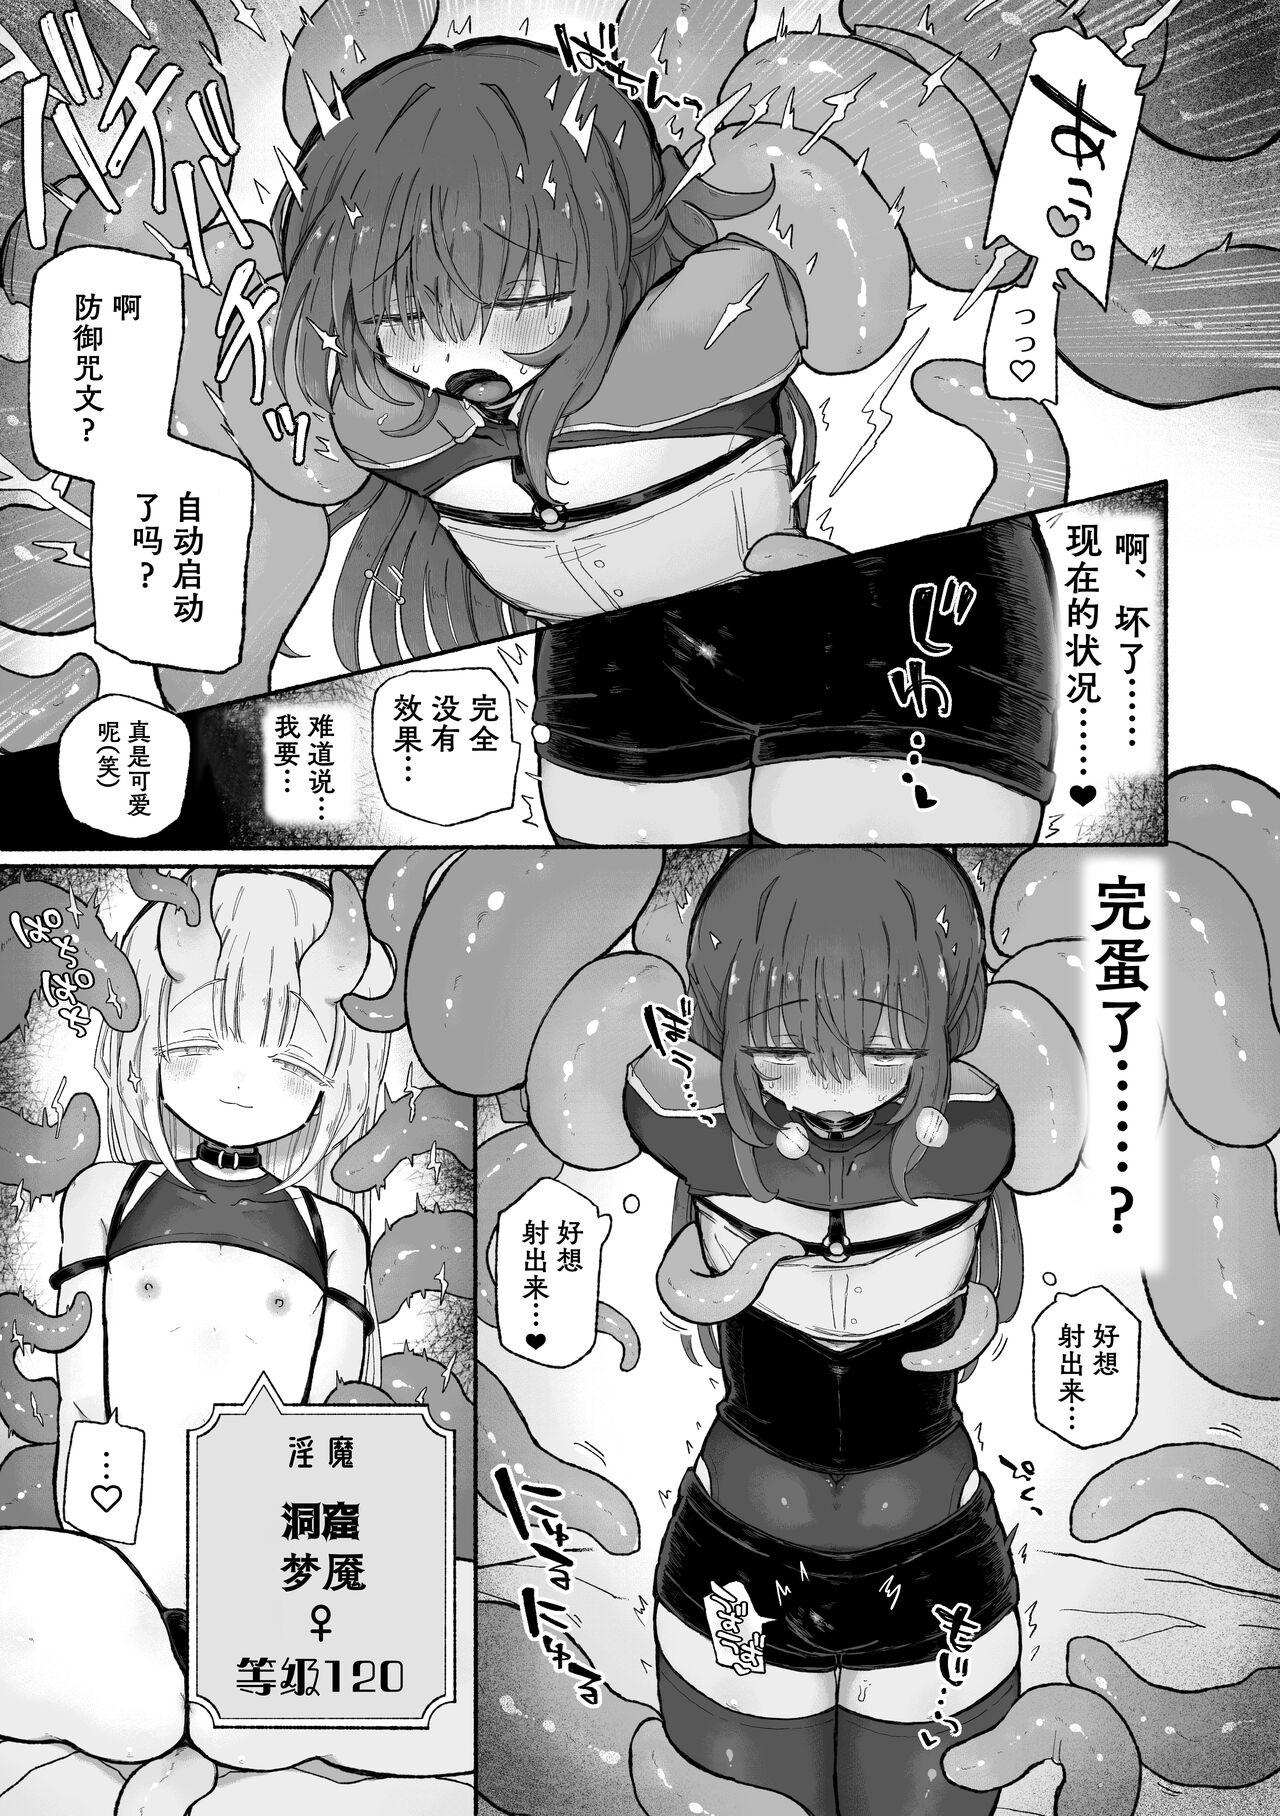 Anime Do hamari chui no kyosei danjon! 〜Mugen shasei no kairaku jigoku e yokoso〜 - Original Soapy Massage - Page 10